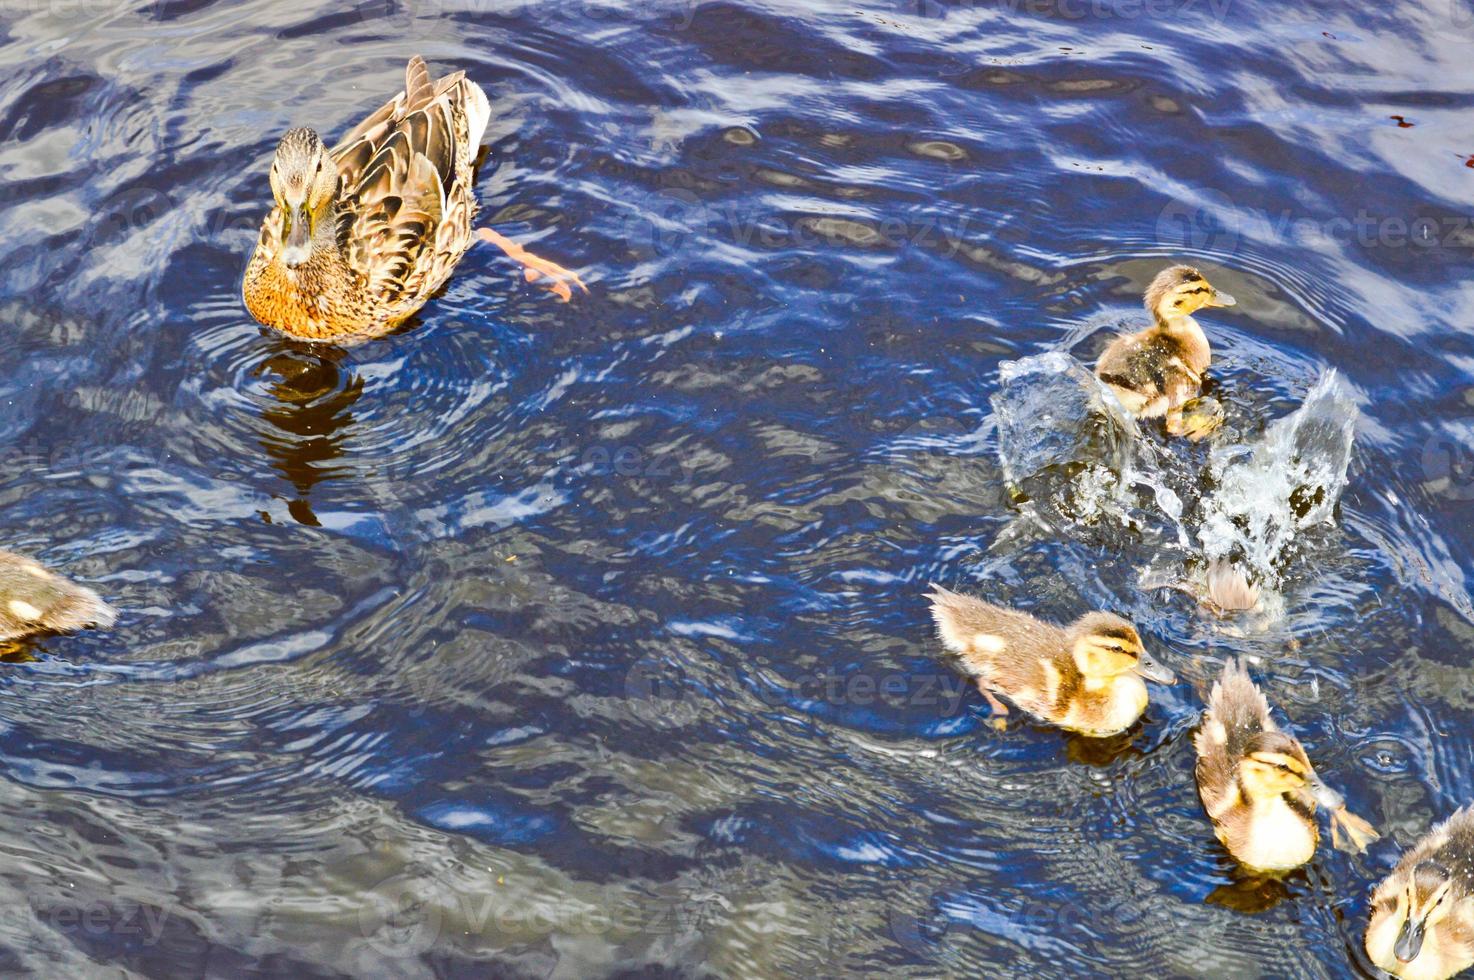 een kudde van veel mooi wild water vogelstand van eenden met kuikens eendjes met bek en Vleugels zwemt tegen de achtergrond van de water in de rivier- meer vijver zee en groen water lelies foto